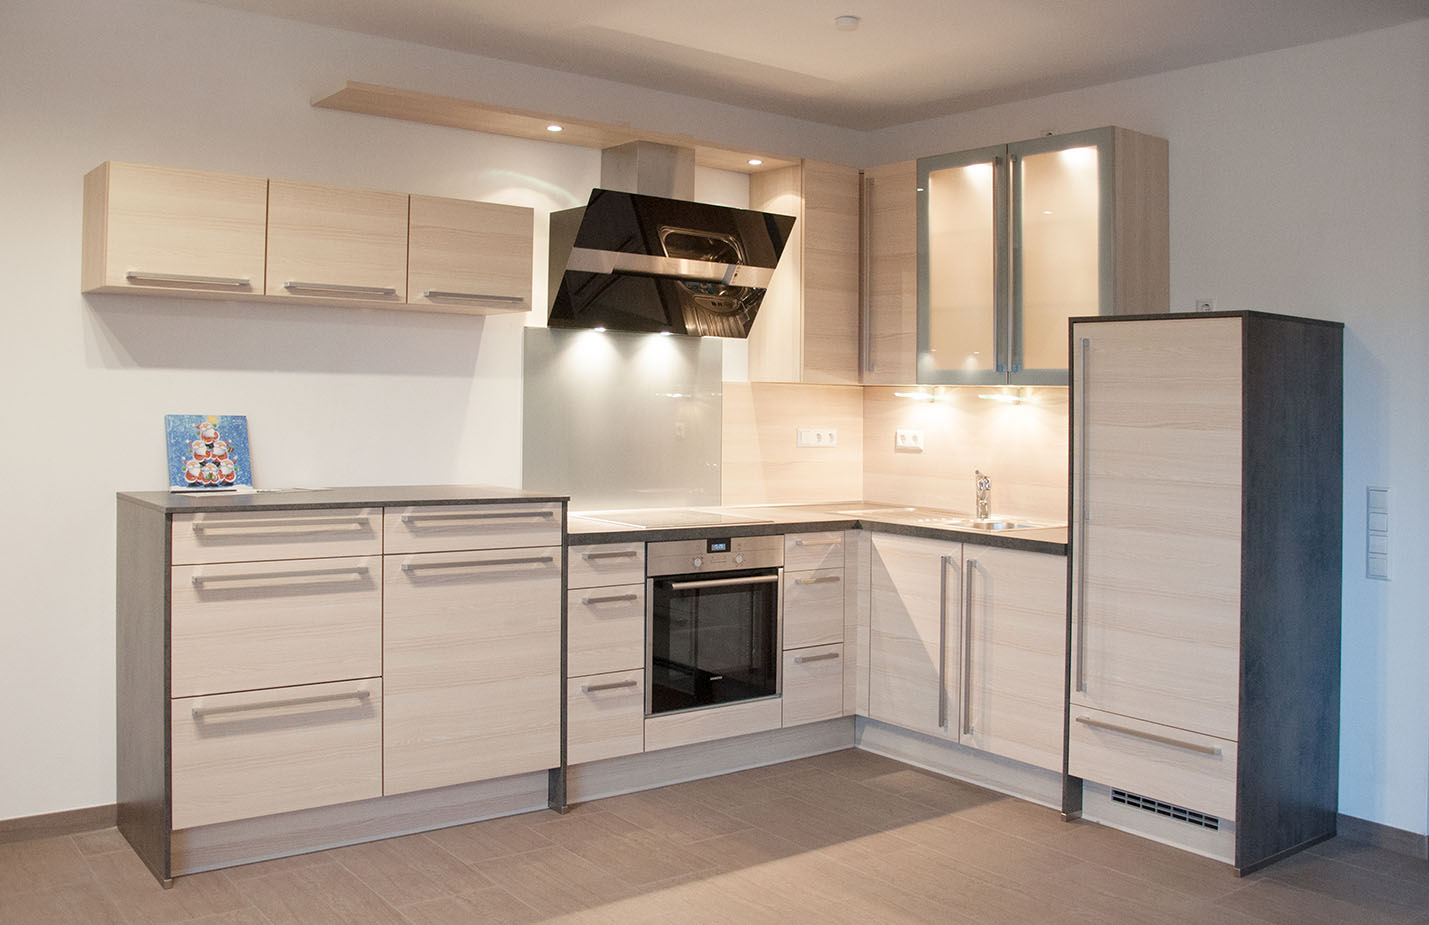 Moderne Küche in einem Mehrfamilienhaus | Möbel nach Maß, Innenarchitektur